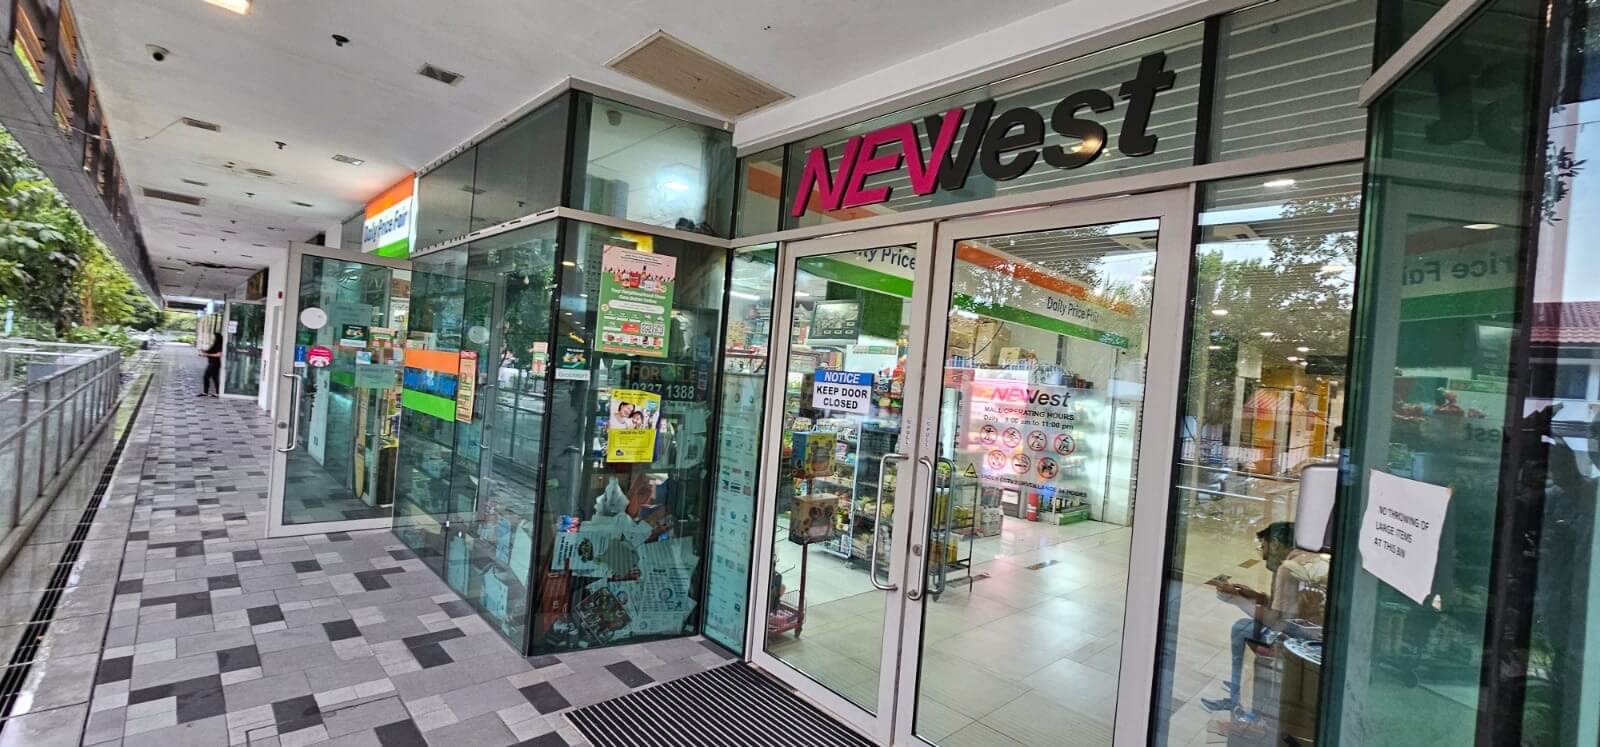 (已成交)Retail Shop Space For Rent @ Newest Mall, 1 West Coast Drive - Near Clementi MRT